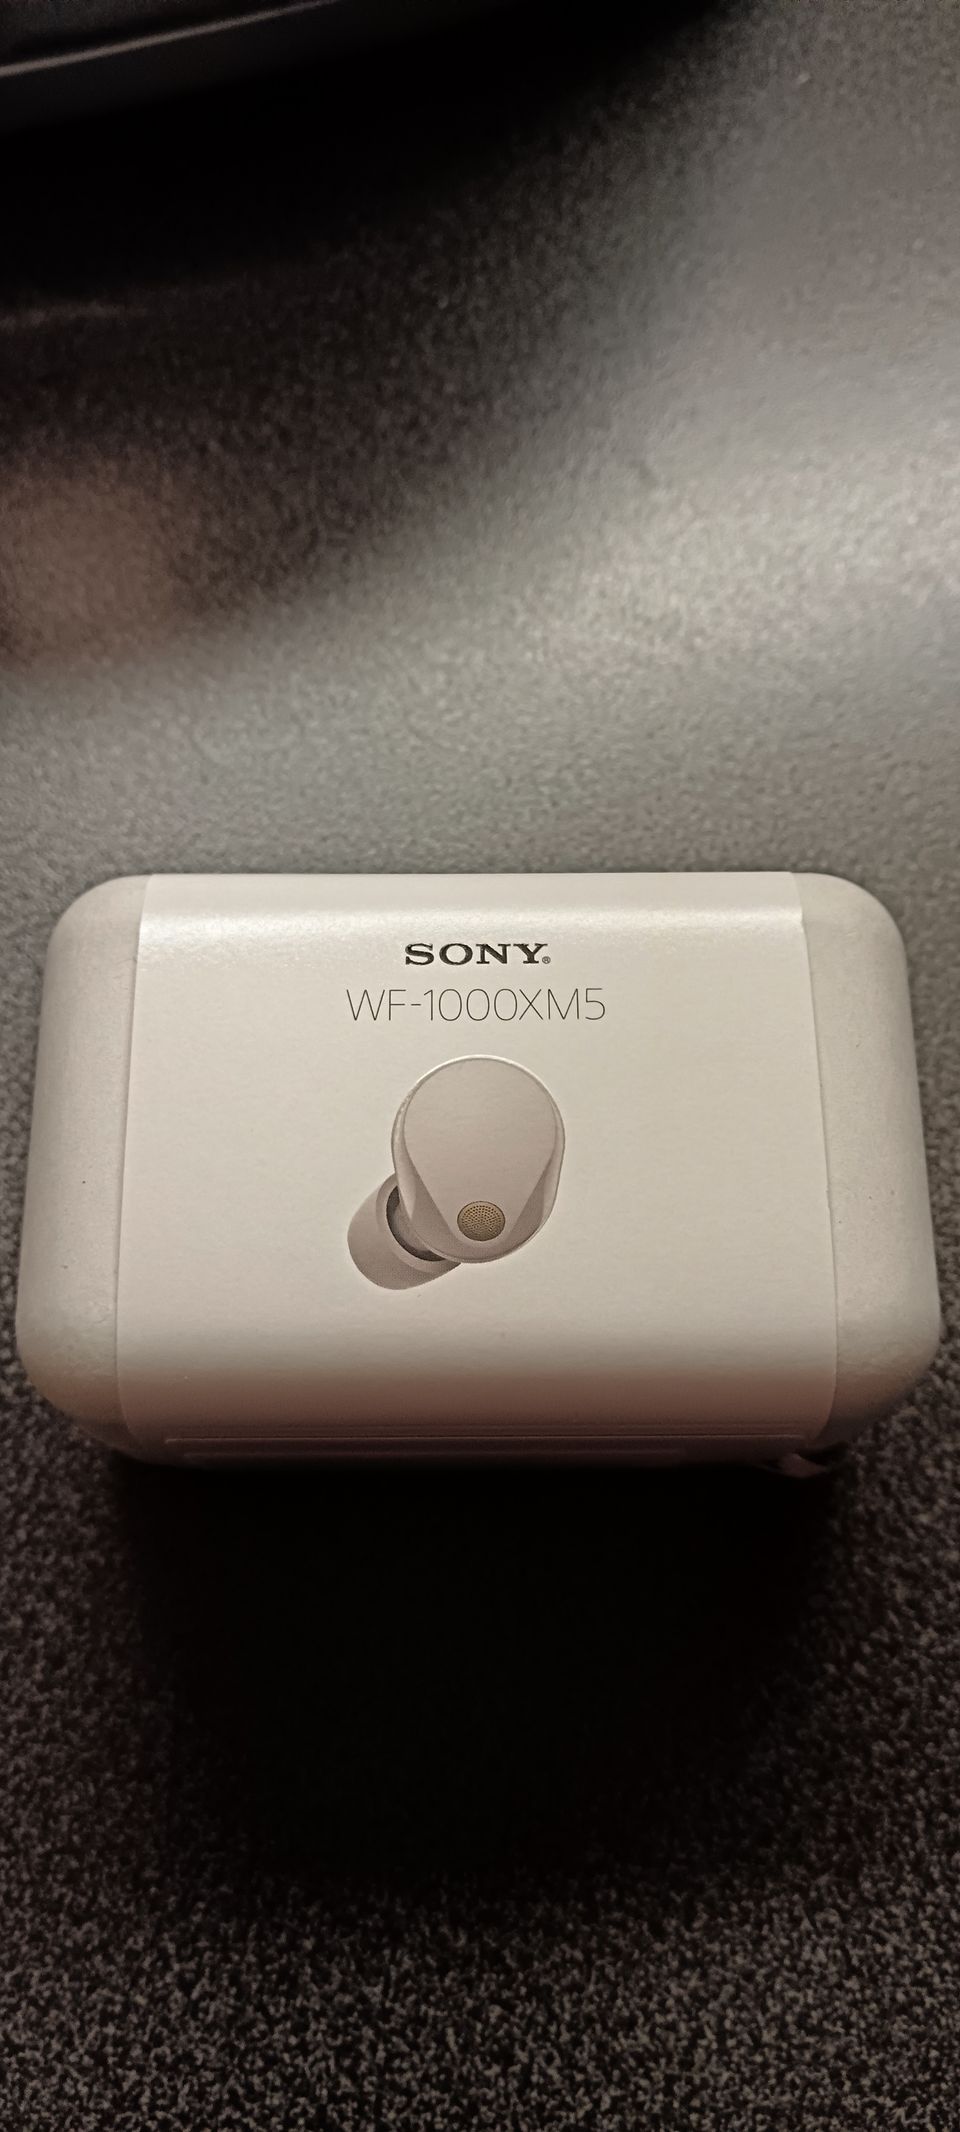 Sony WF-1000xm5